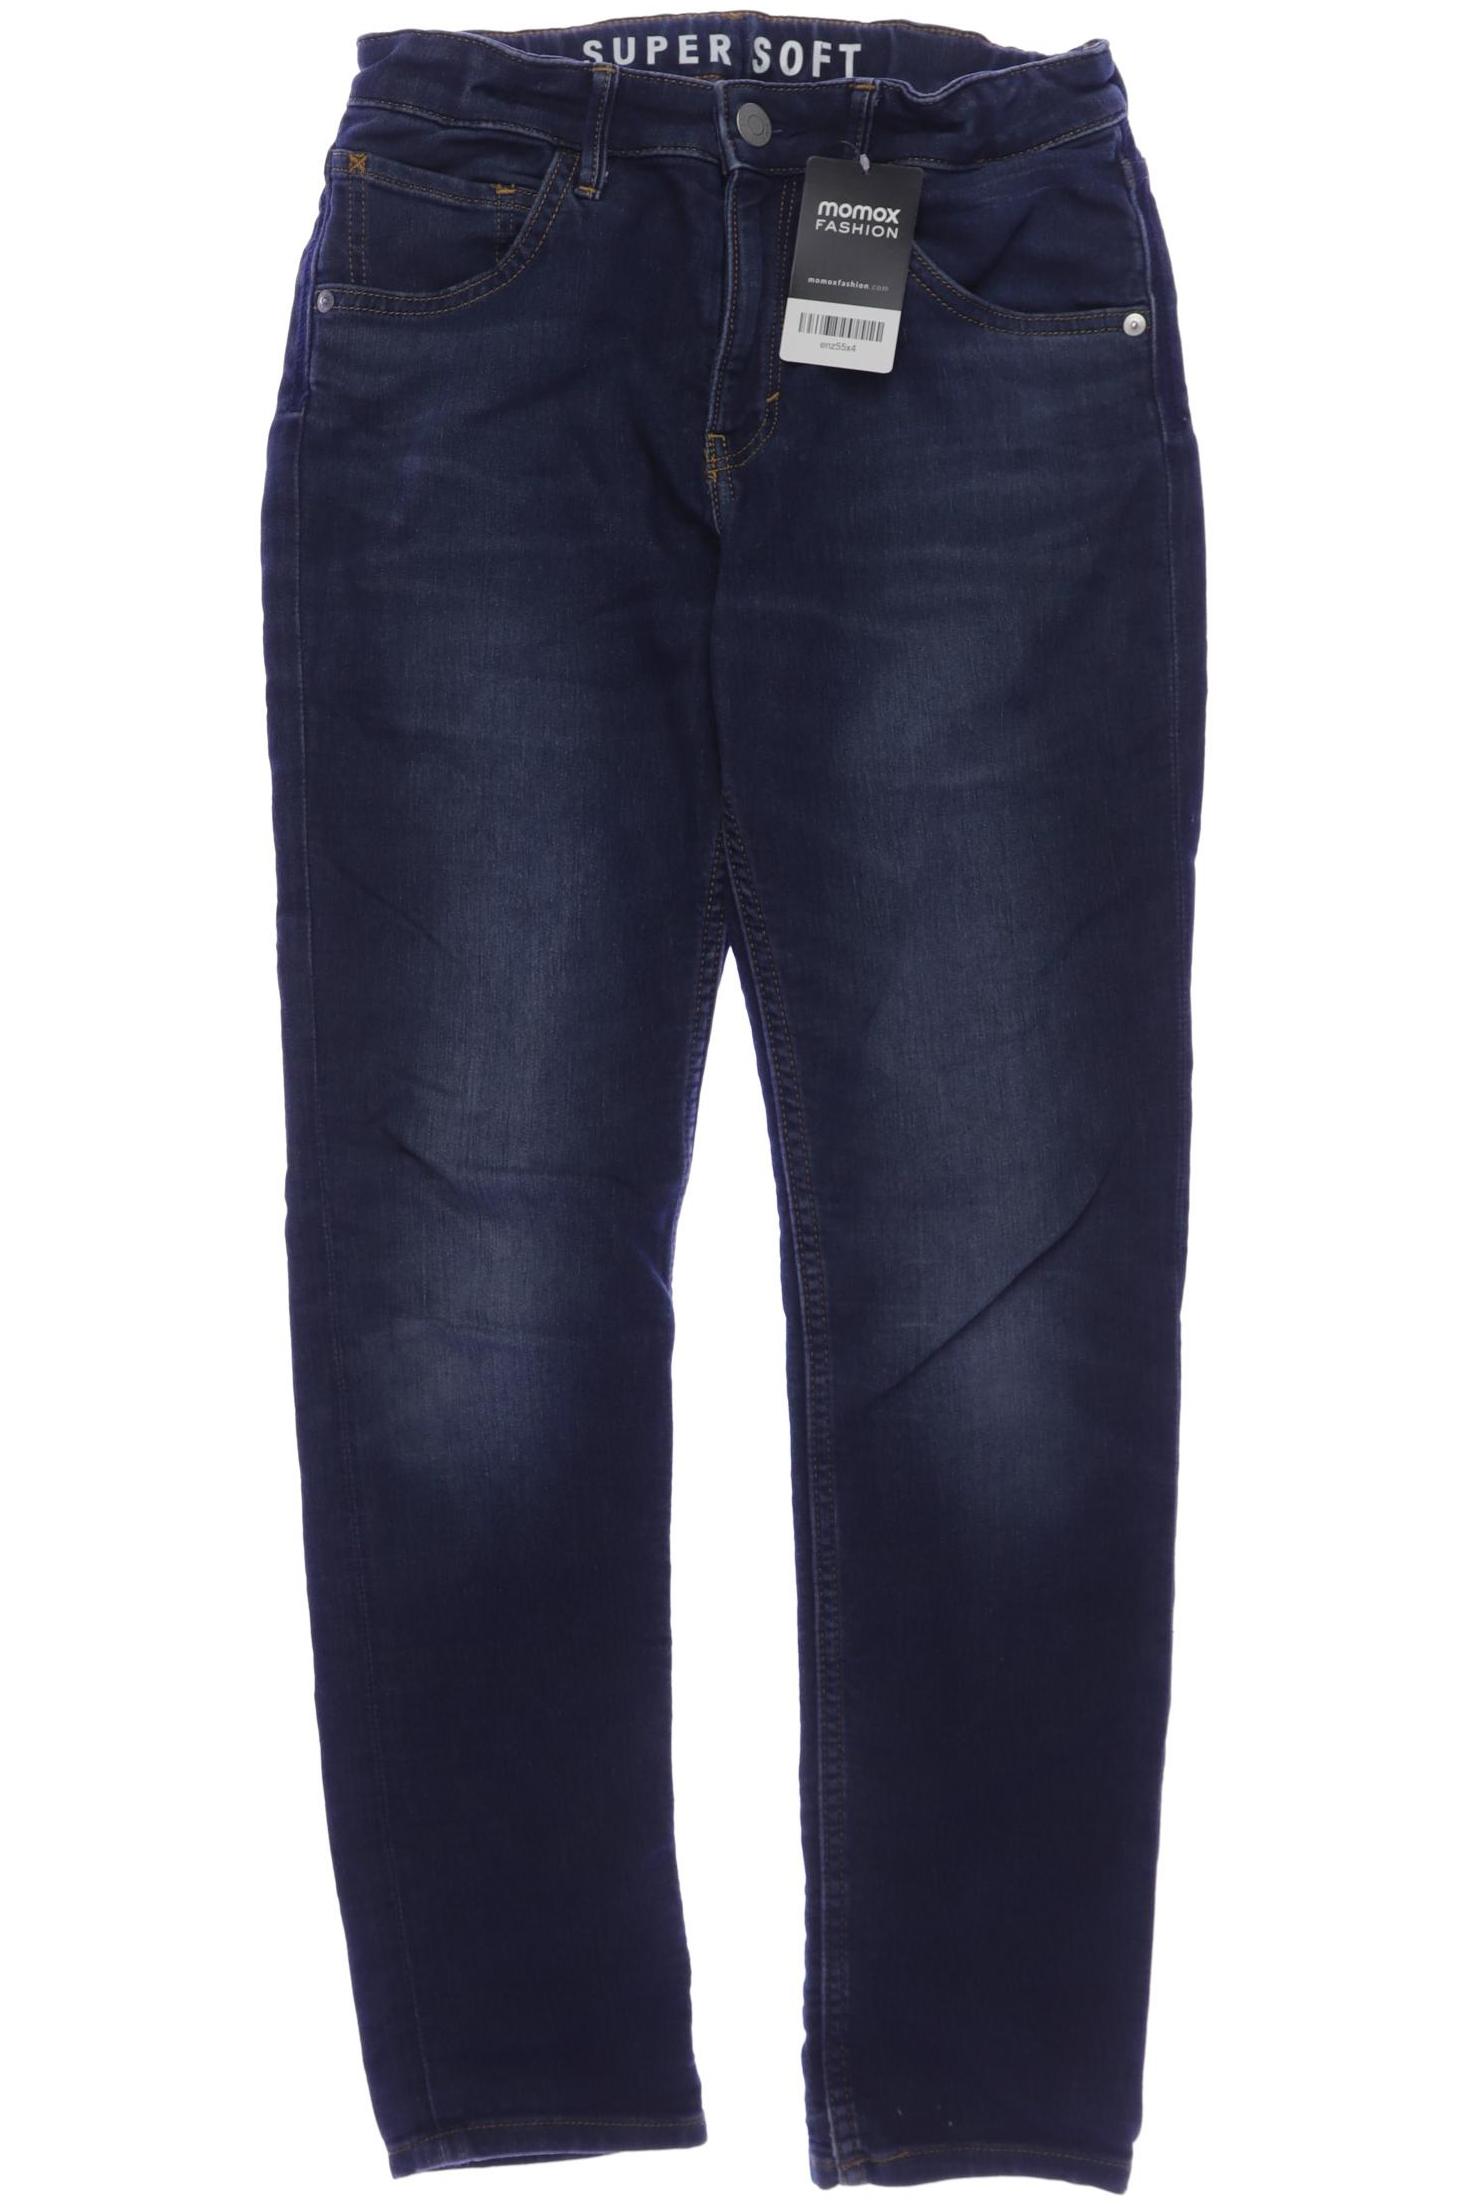 H&M Herren Jeans, marineblau, Gr. 158 von H&M